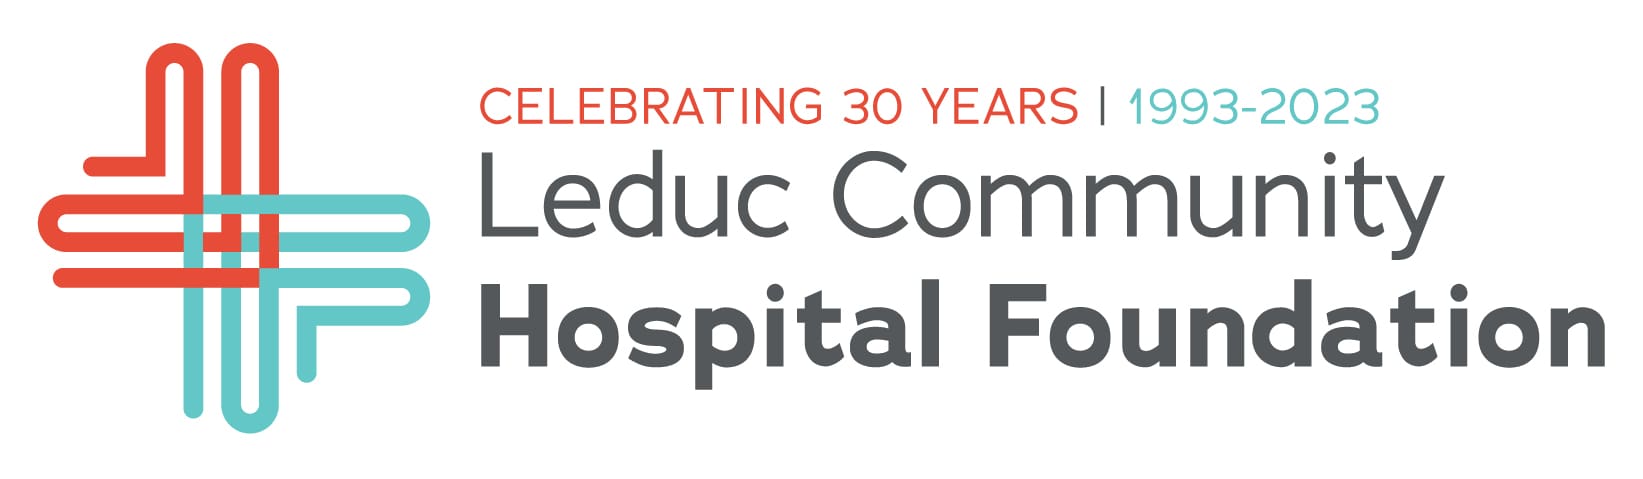 Leduc Community Hospital Foundation